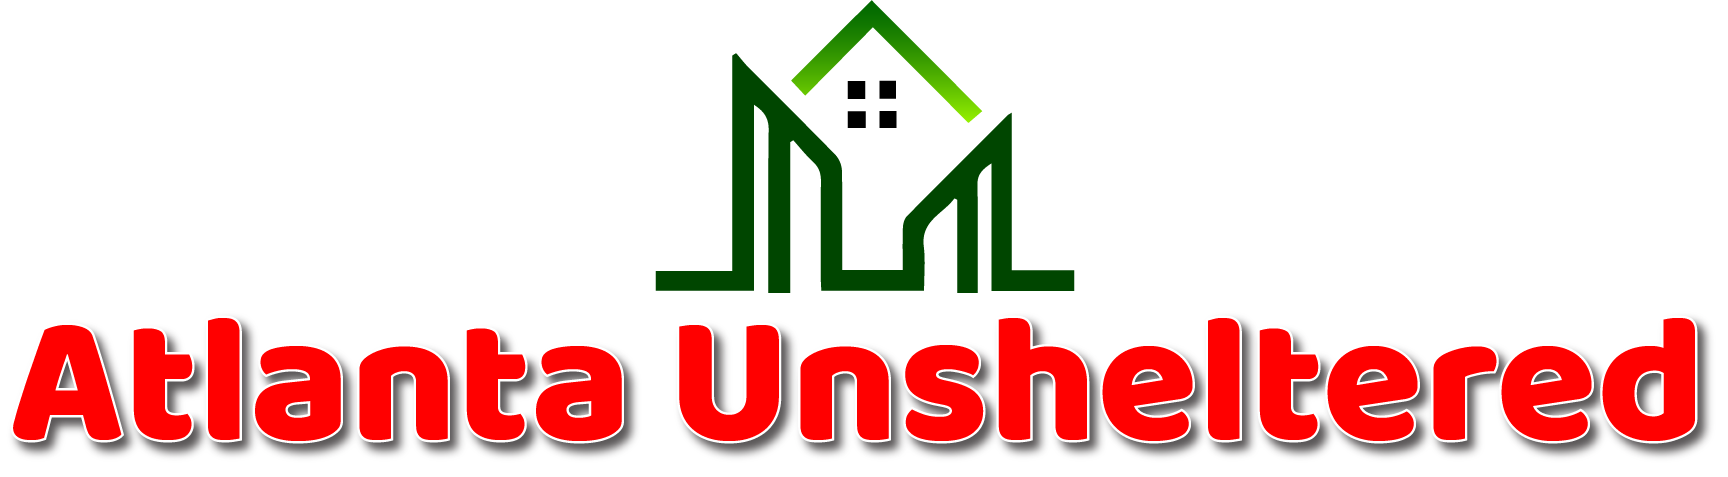 Atlanta Unsheltered Logo